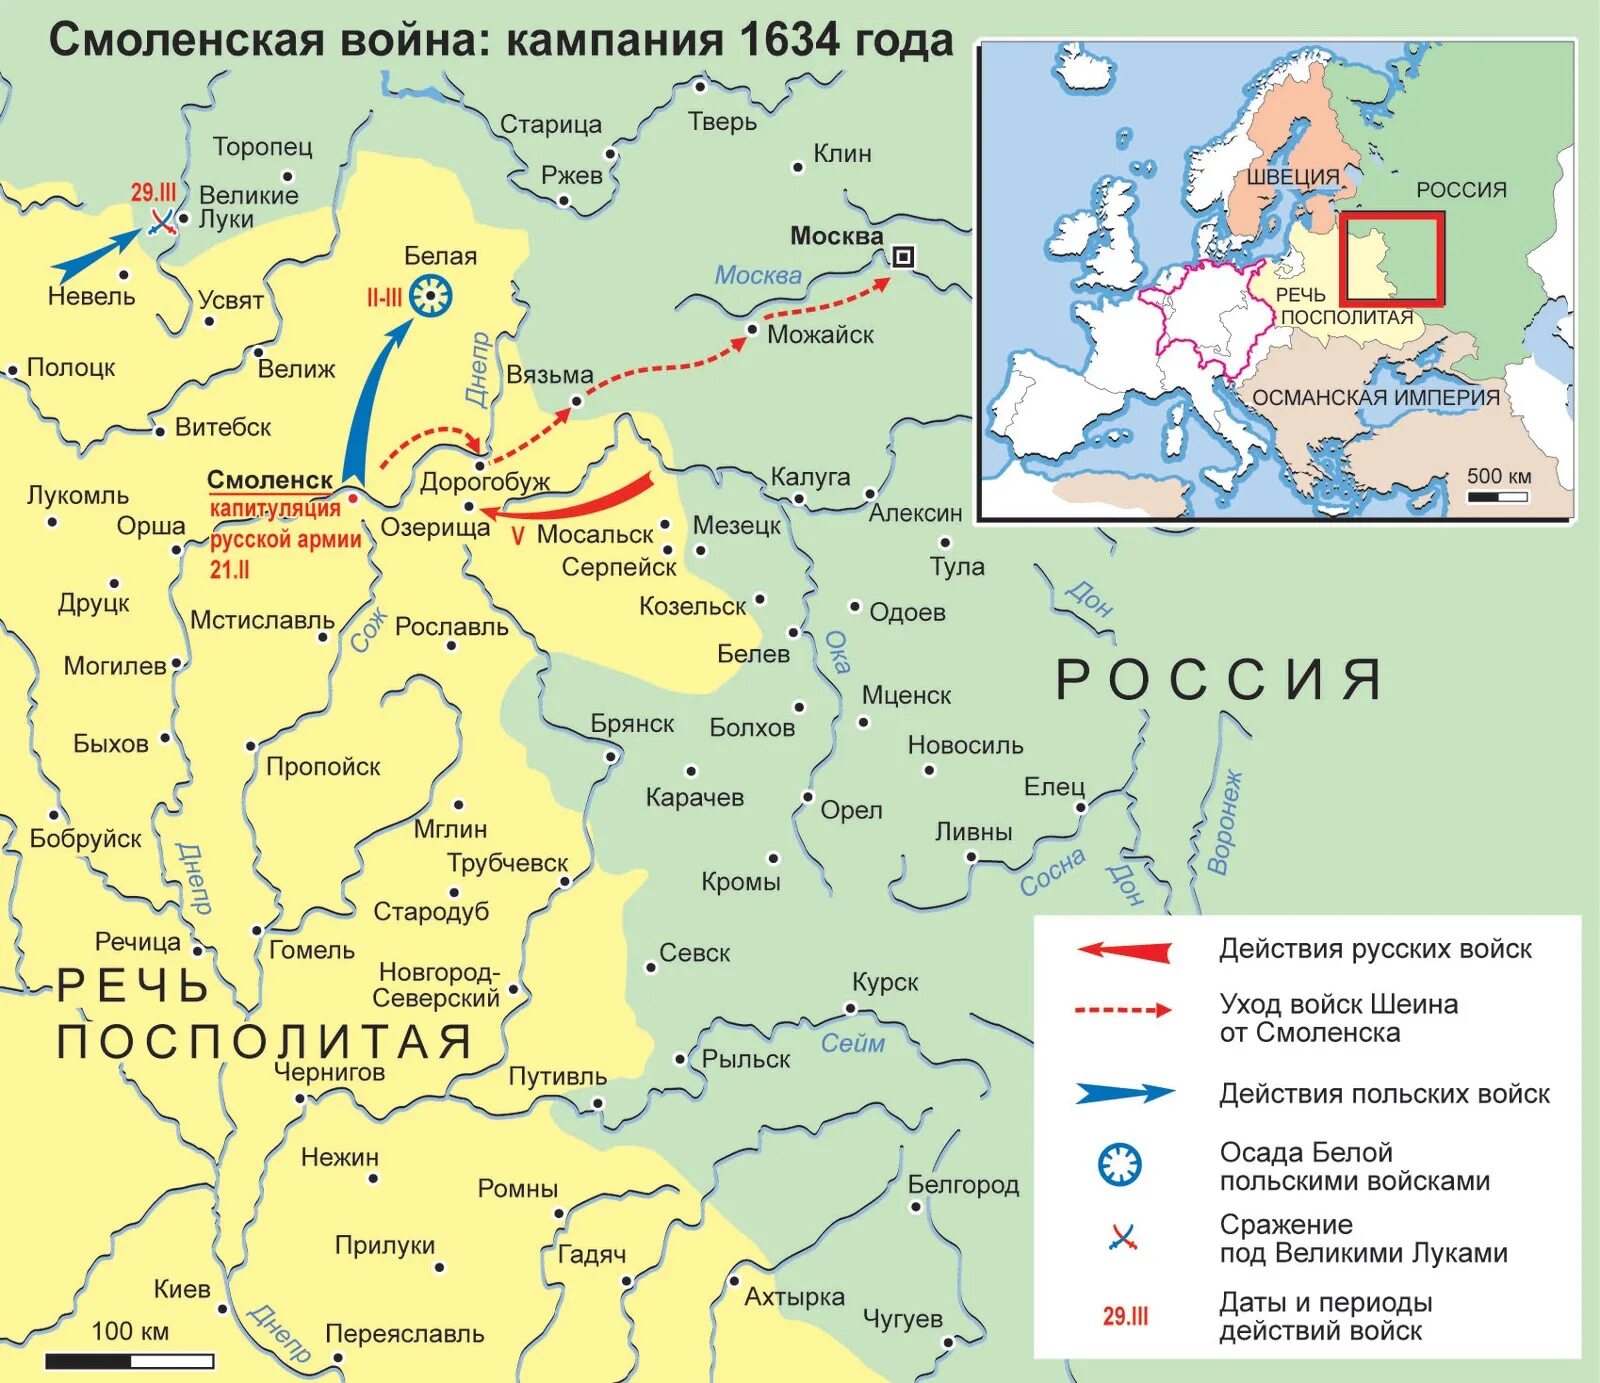 Смоленской войне 1632 –1634 гг.